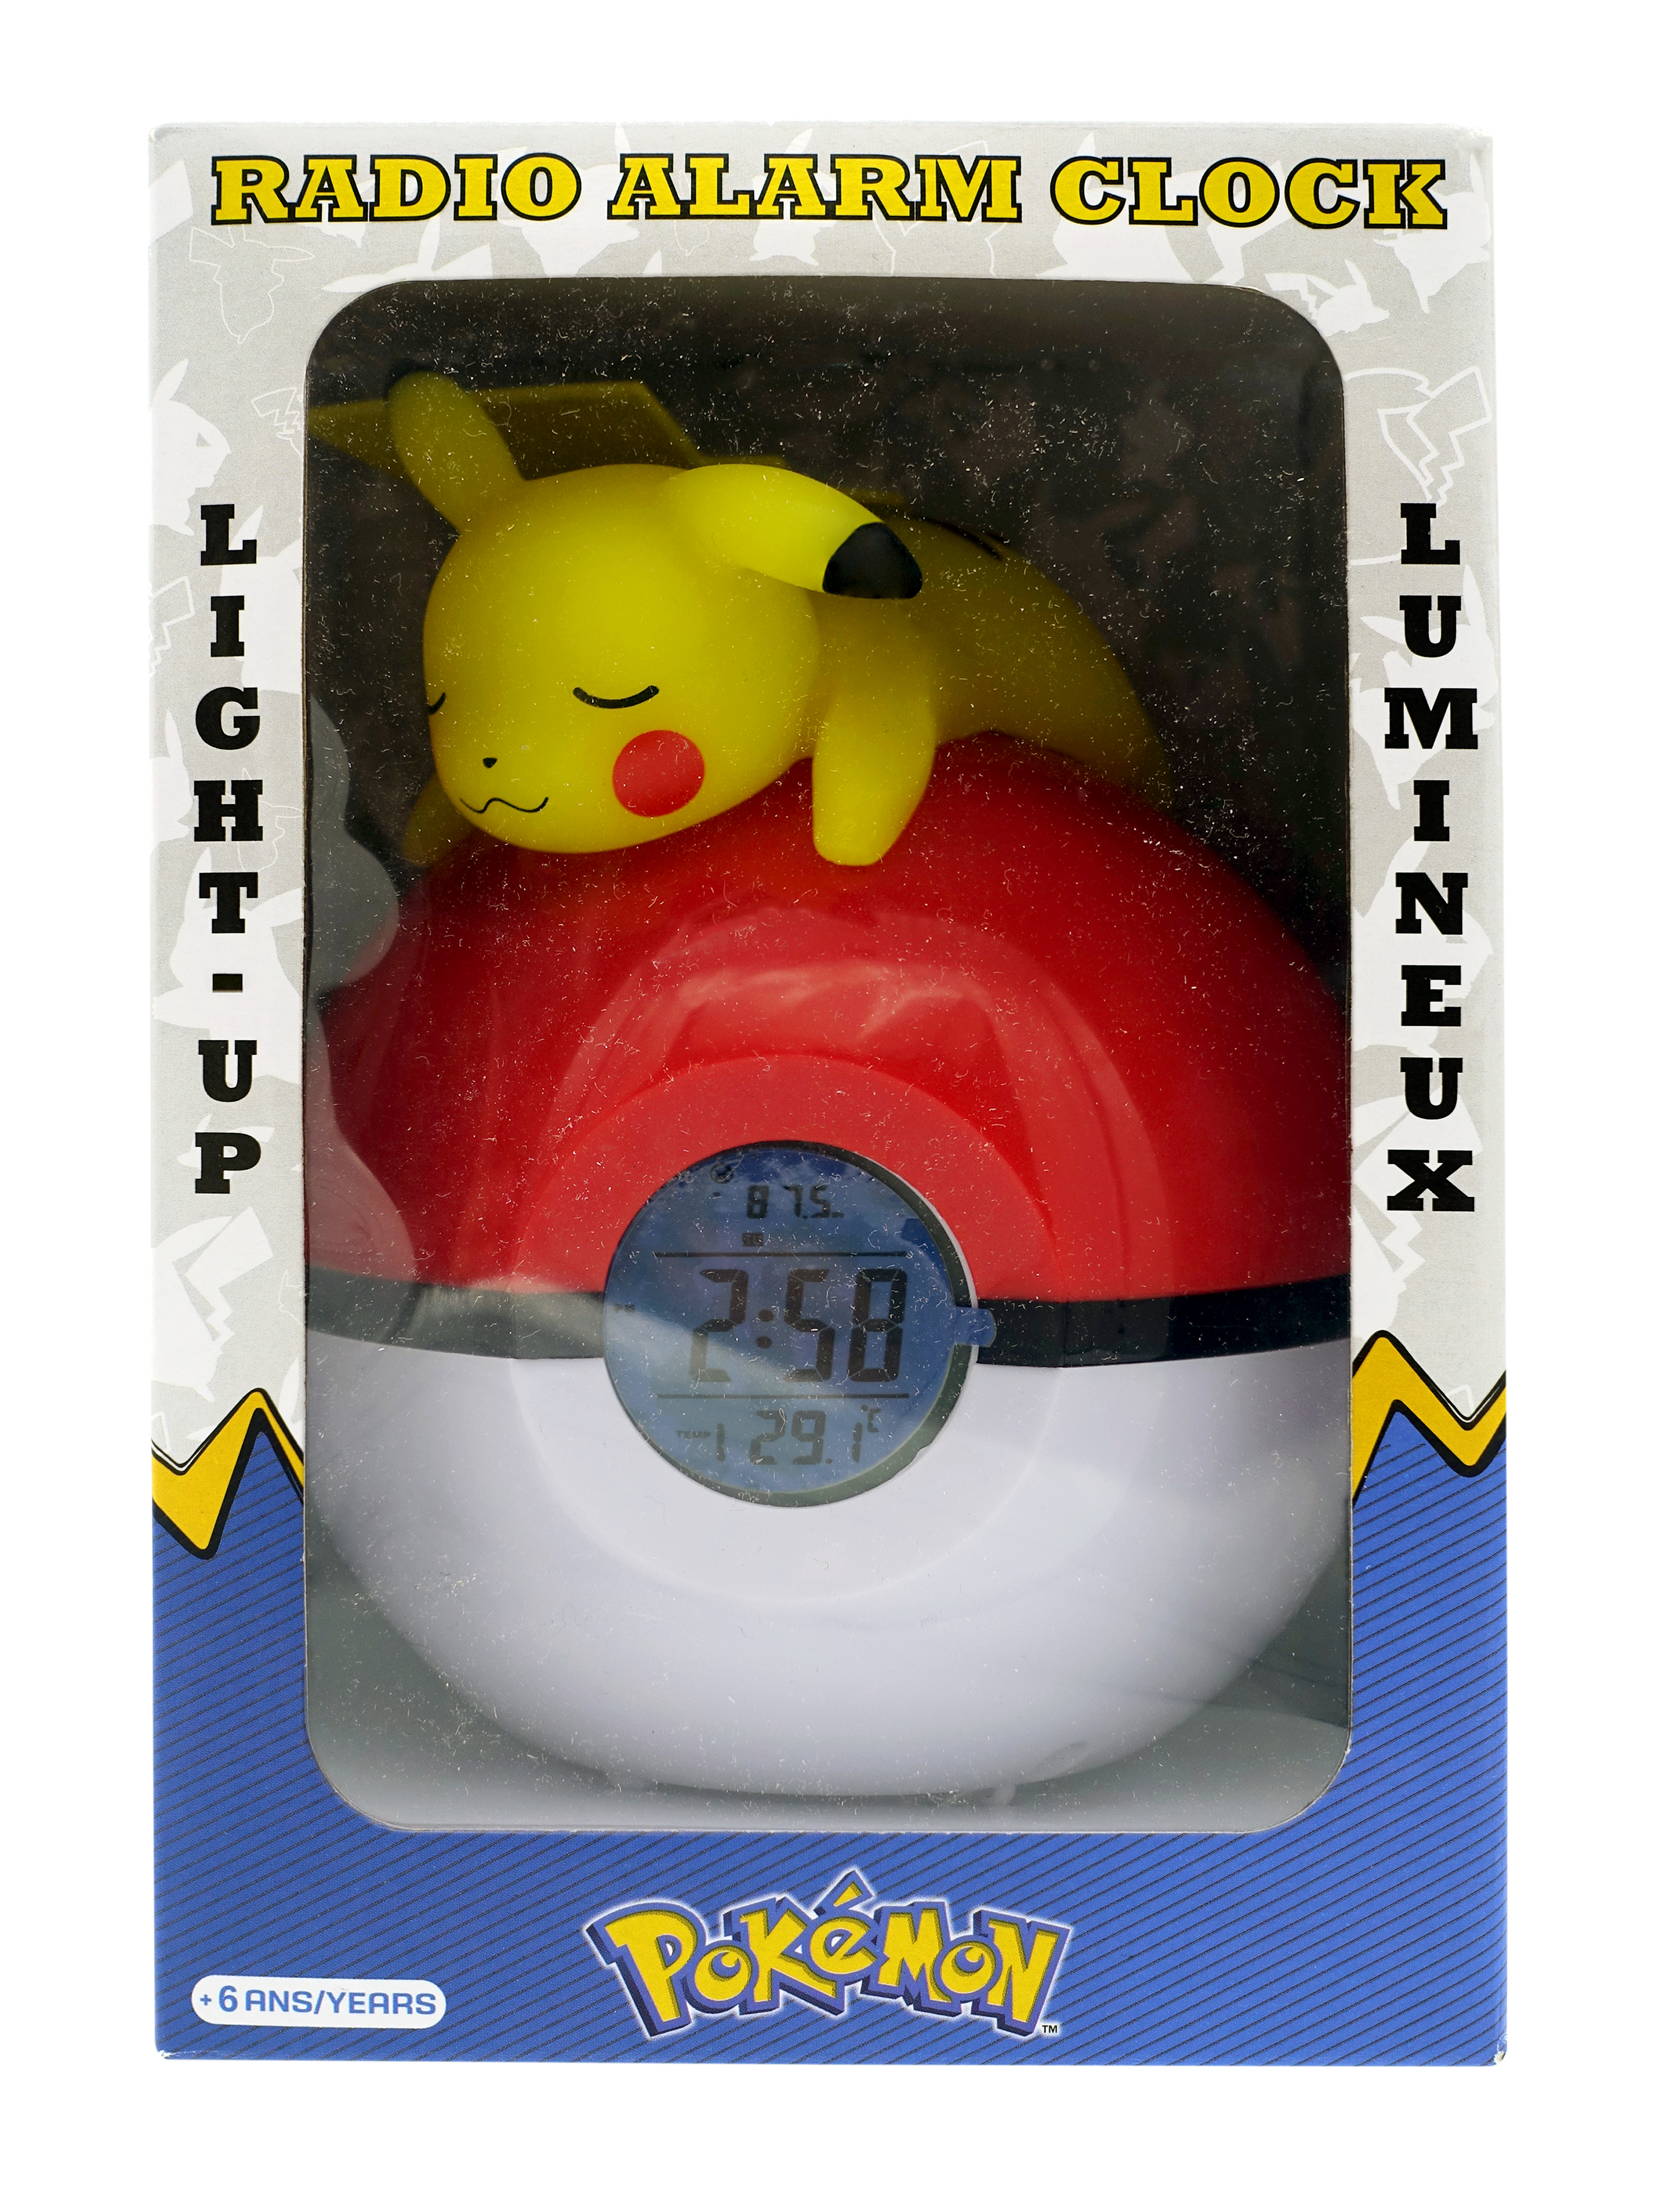 Pokémon: Budík - Pikachu & PokeBall